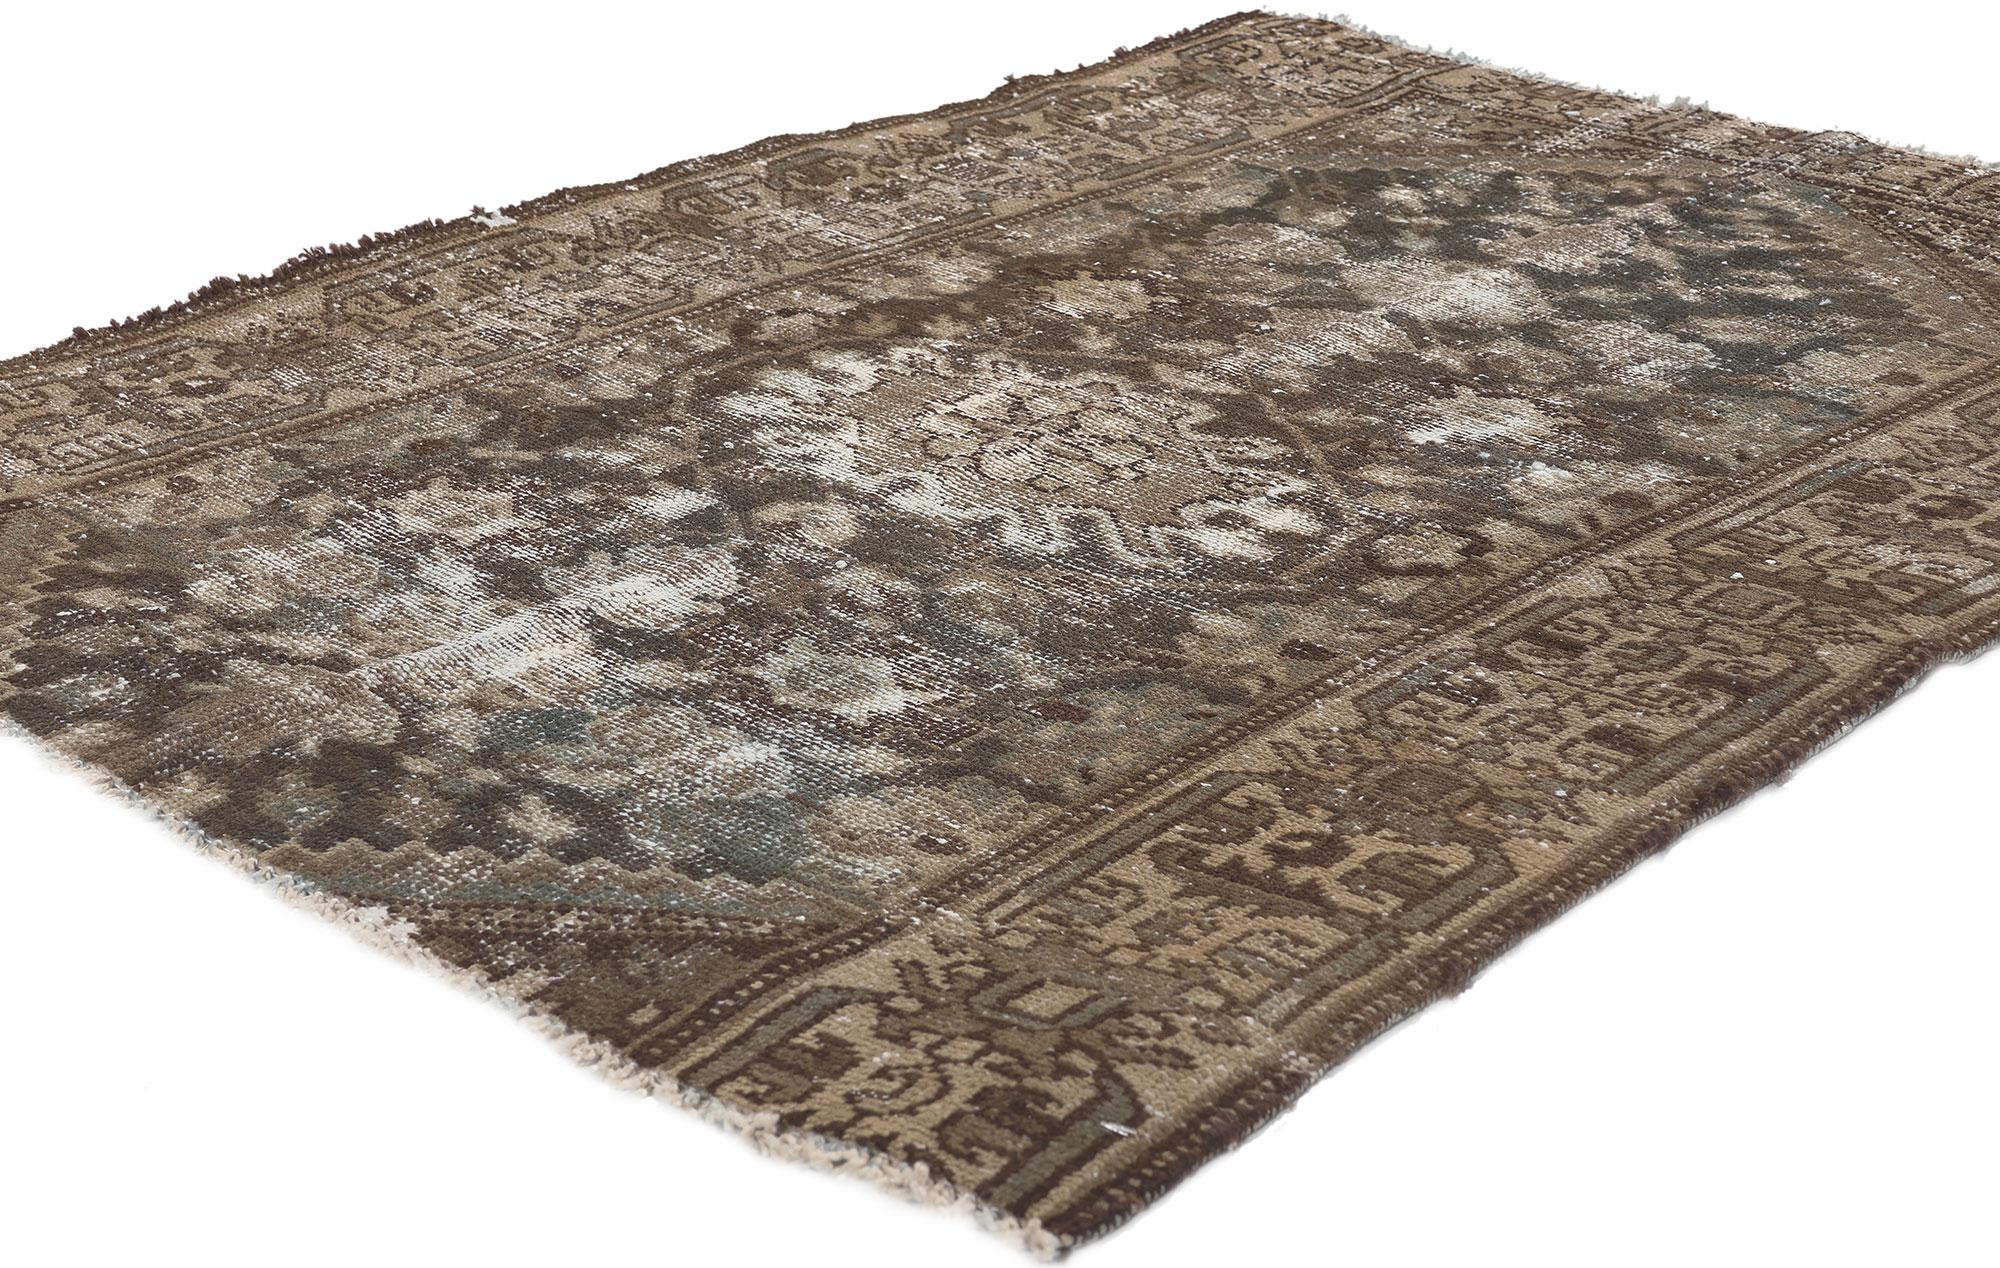 78577 Tapis persan Hamadan, 03'01 x 04'01. 
Ce tapis Hamadan persan antique et délabré allie finesse et sensibilité rustique. Le design géométrique délavé et les couleurs neutres des tons de terre tissés dans cette pièce s'associent pour créer un